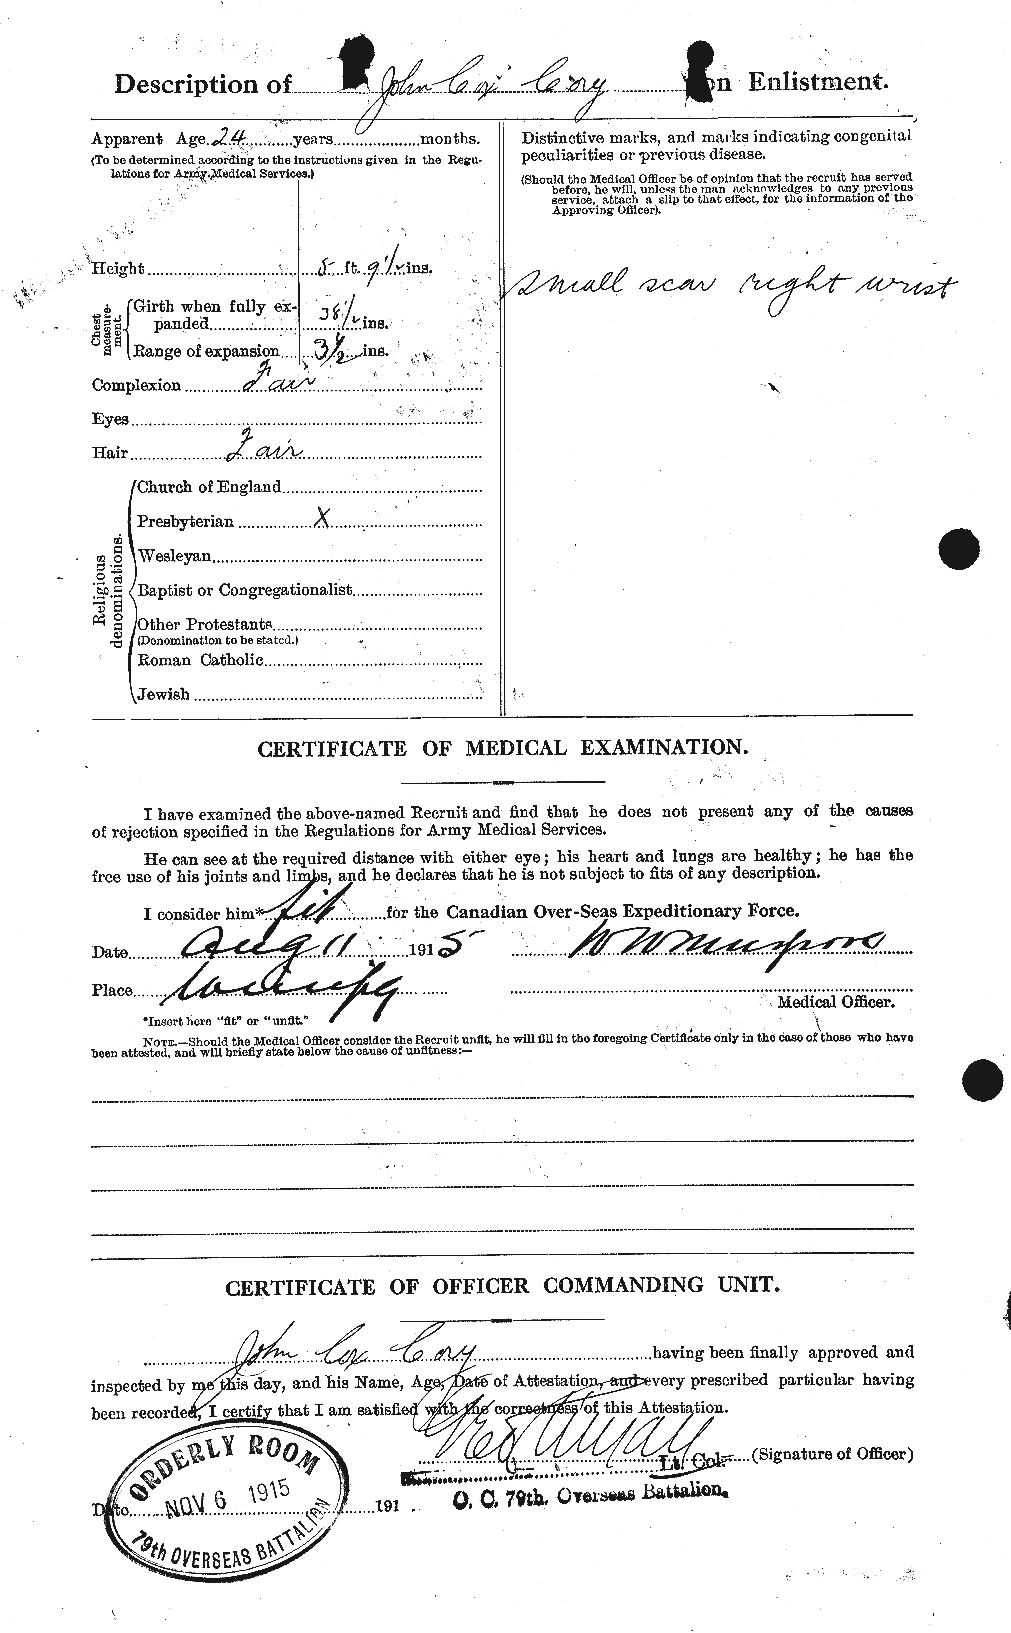 Dossiers du Personnel de la Première Guerre mondiale - CEC 058082b